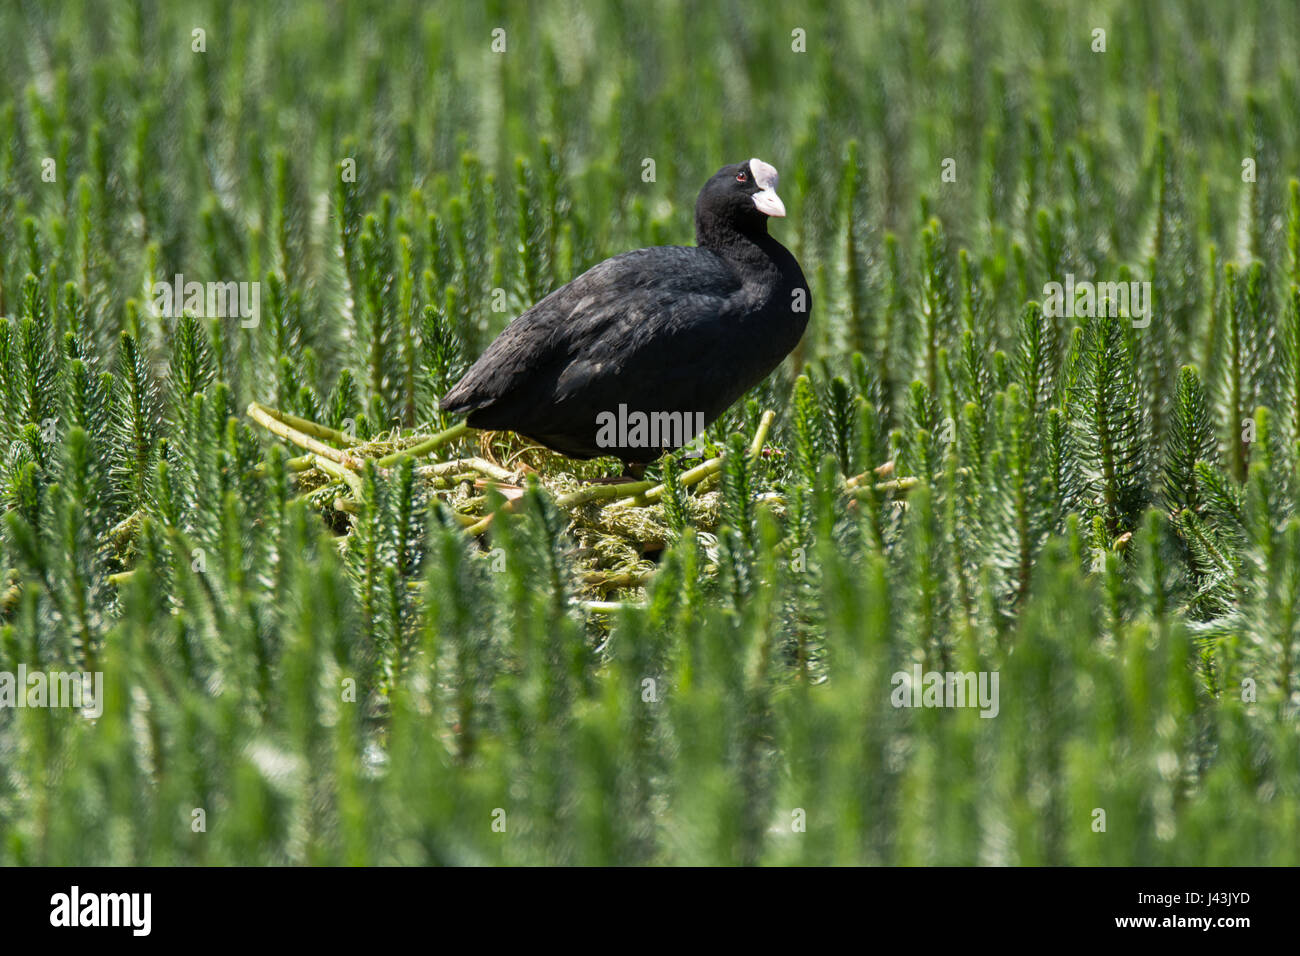 La folaga (fulica atra) in piedi sul nido tra vegetazione acquatica. Acqua nera uccello della famiglia Rallidae sul nido costruito di materiale vegetale Foto Stock